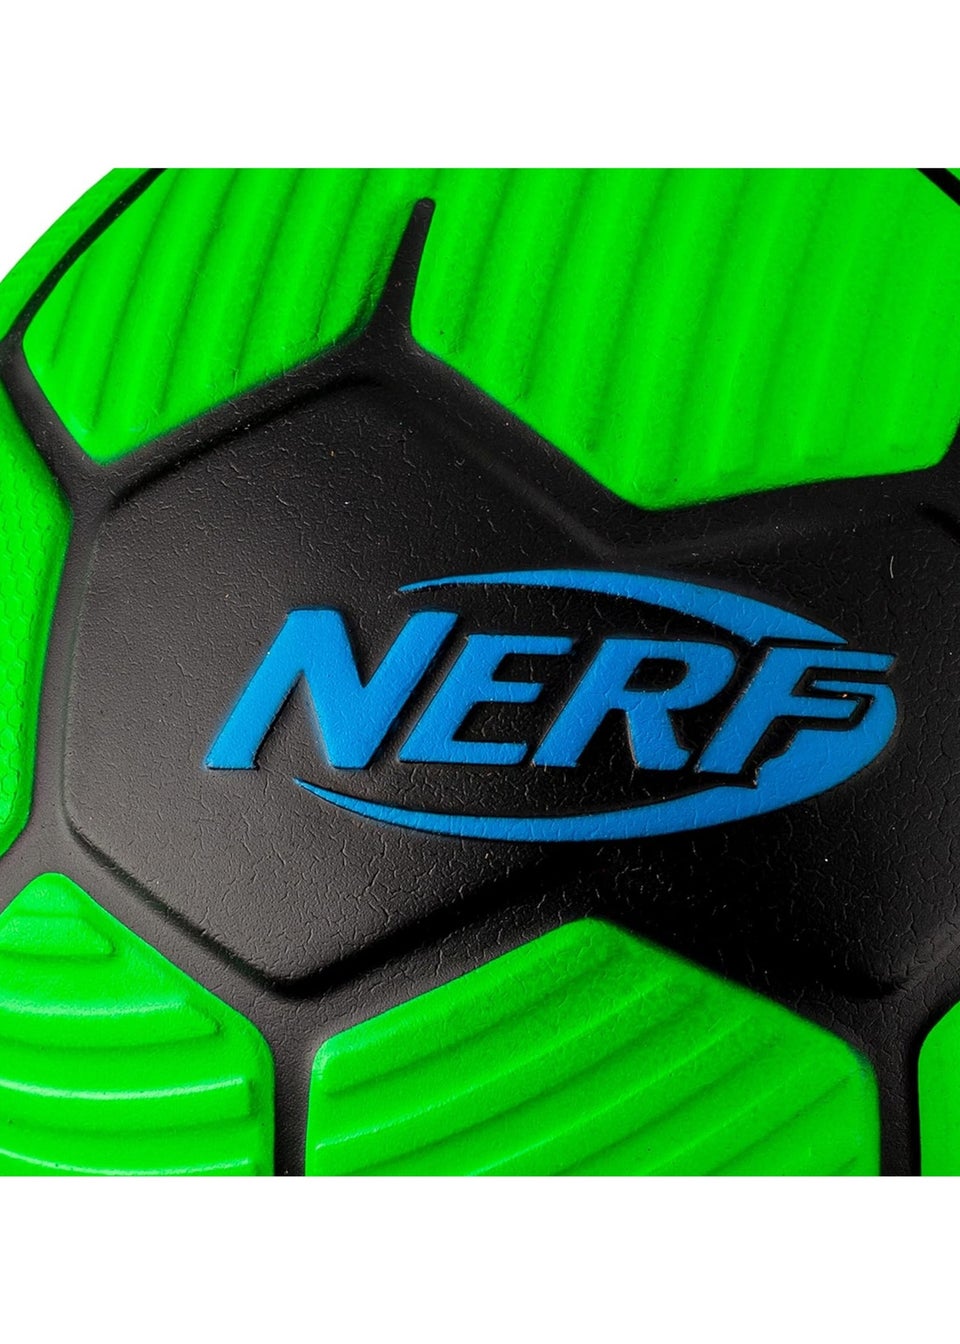 Nerf Green Proshot Football